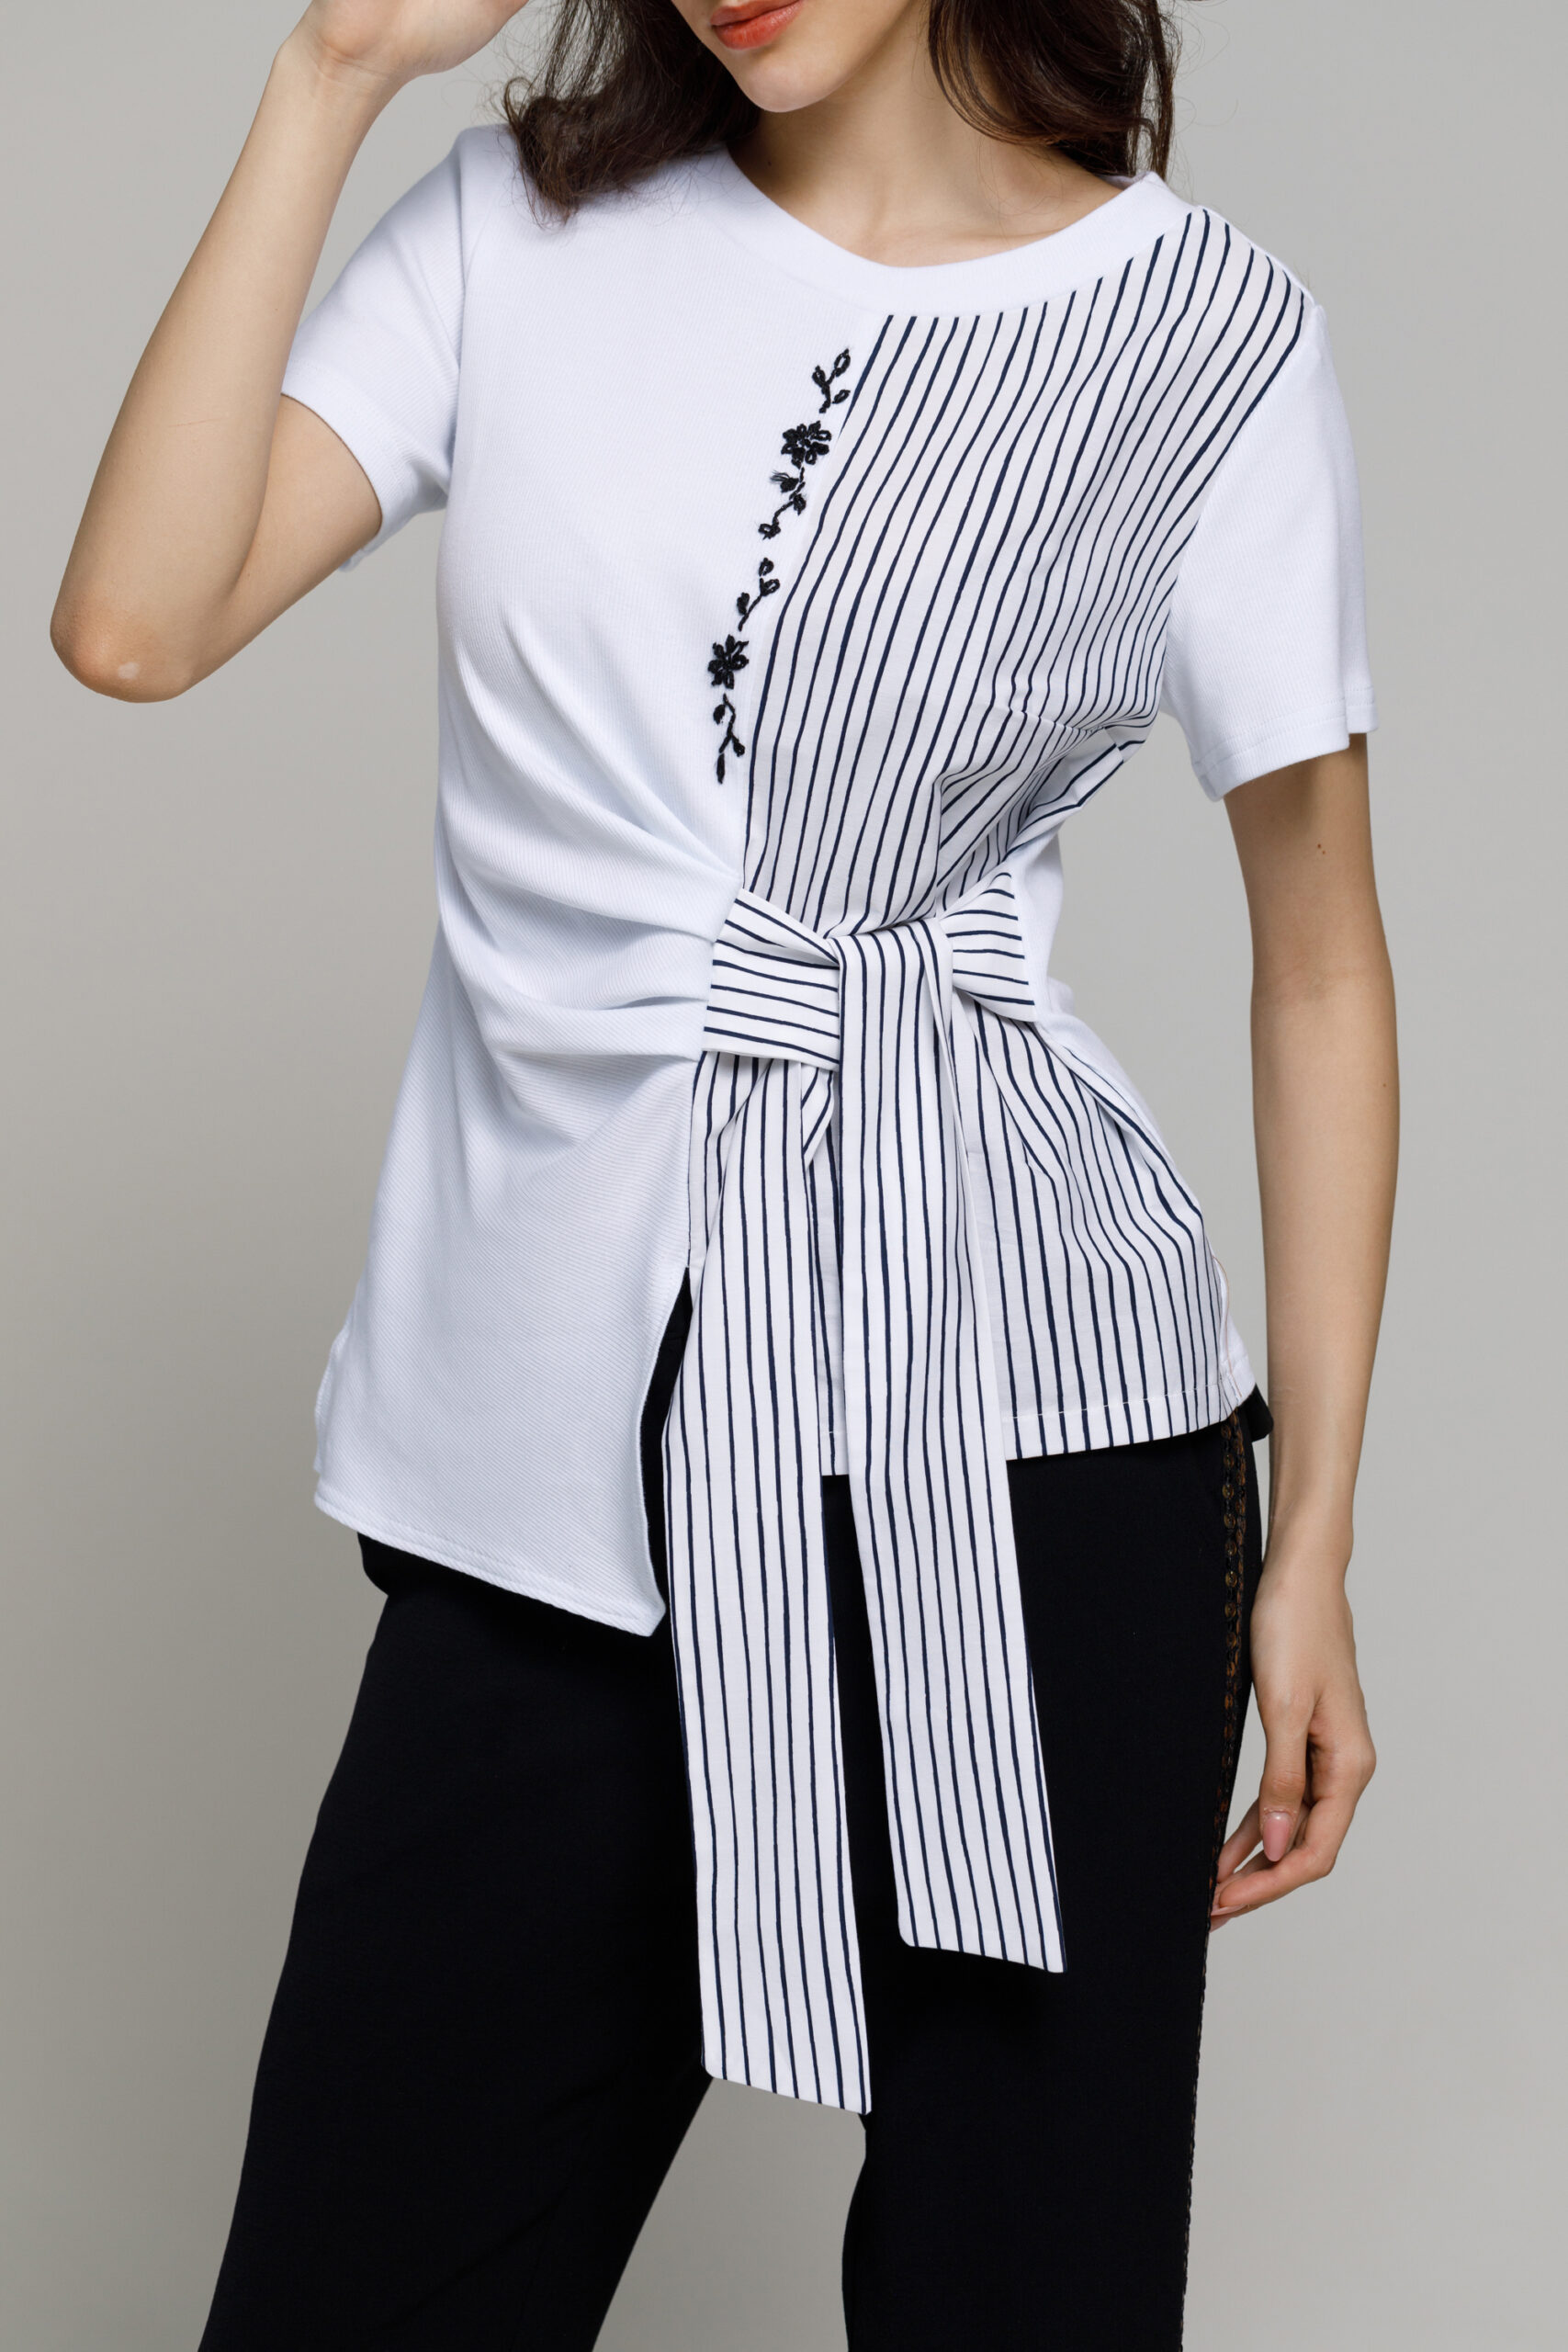 Bluza PAX alba cu cordon. Materiale naturale, design unicat, cu broderie si aplicatii handmade